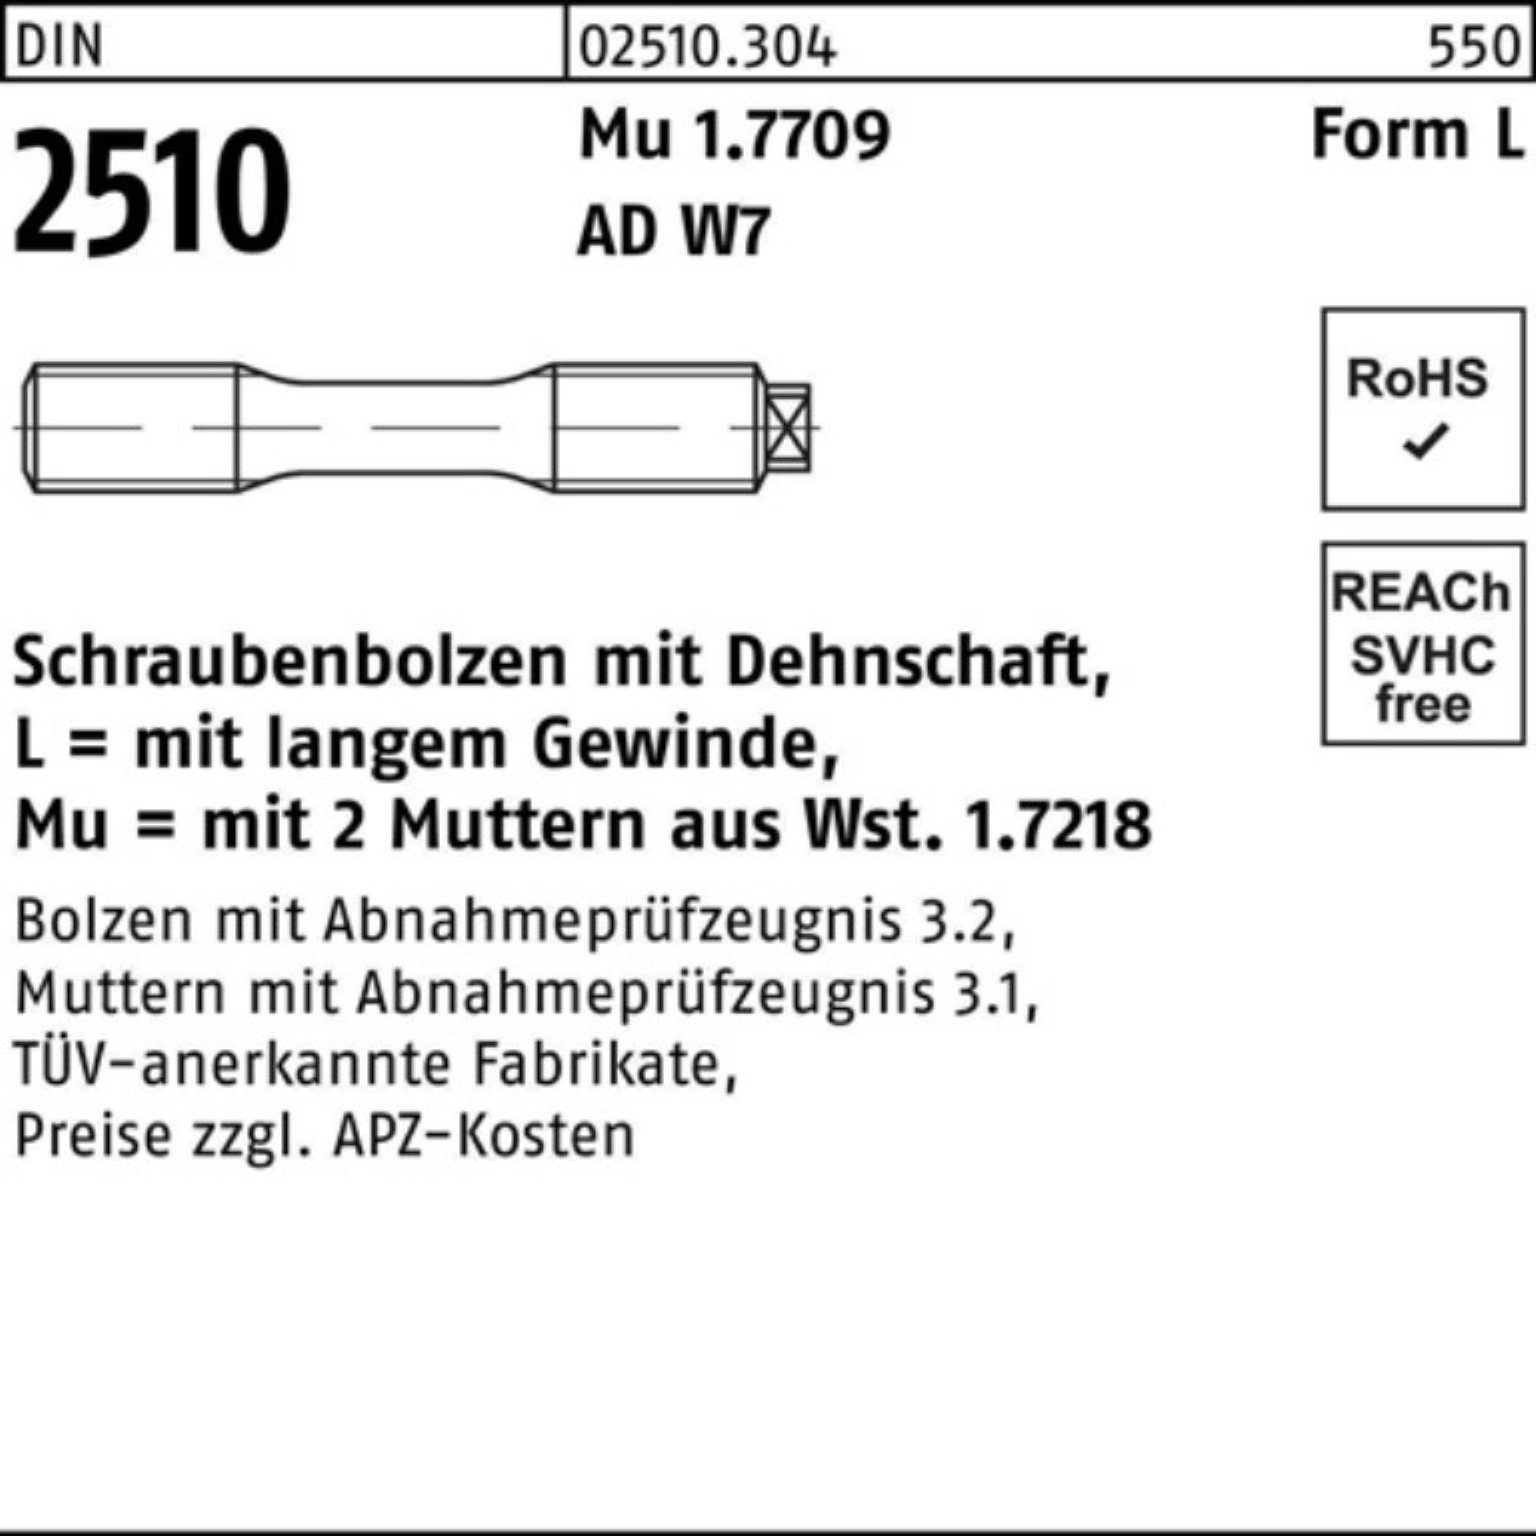 2510 DIN 16x Mu Pack 100er Dehnschaft/2Muttern Schraubenbolzen LM 110 Reyher Muttern